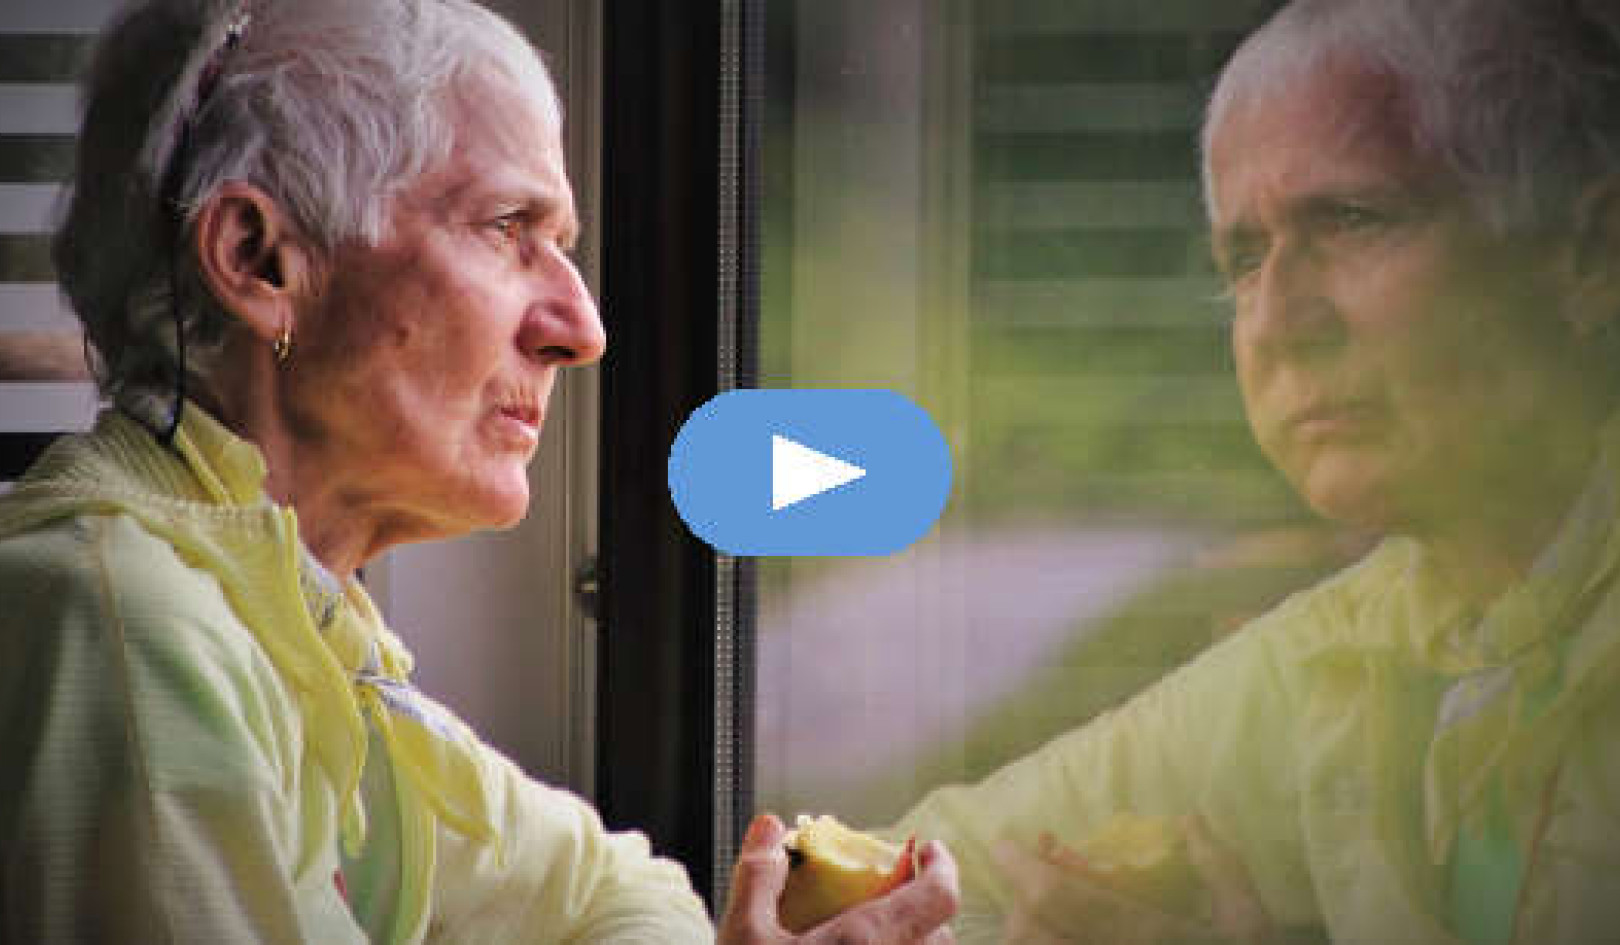 Điều gì về già thực sự cảm thấy thích đối với một số người (Video)